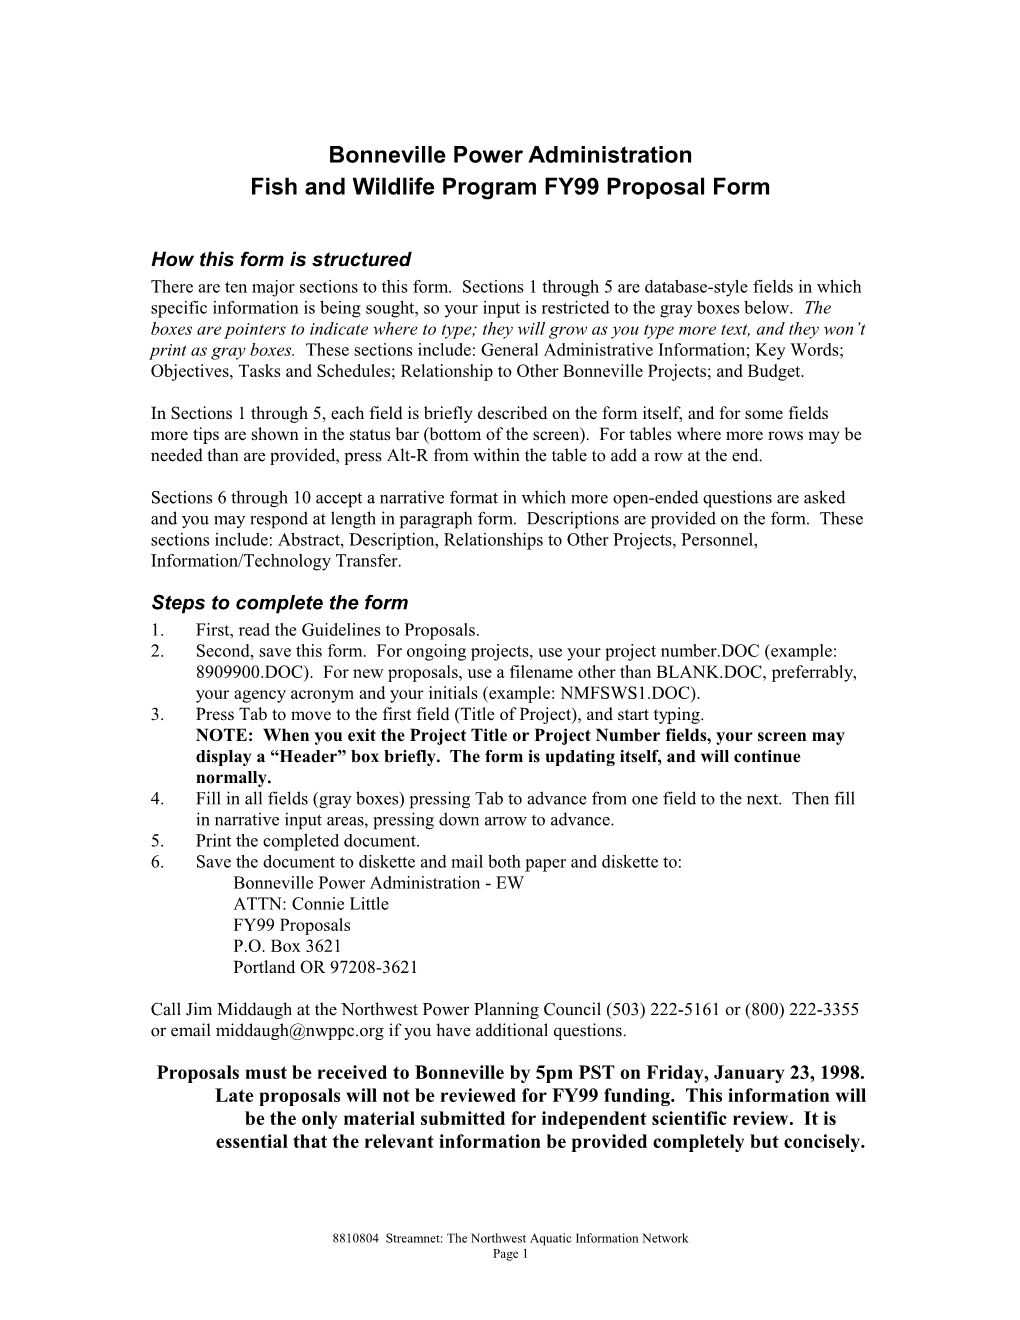 Bonneville F&W Program FY99 Form